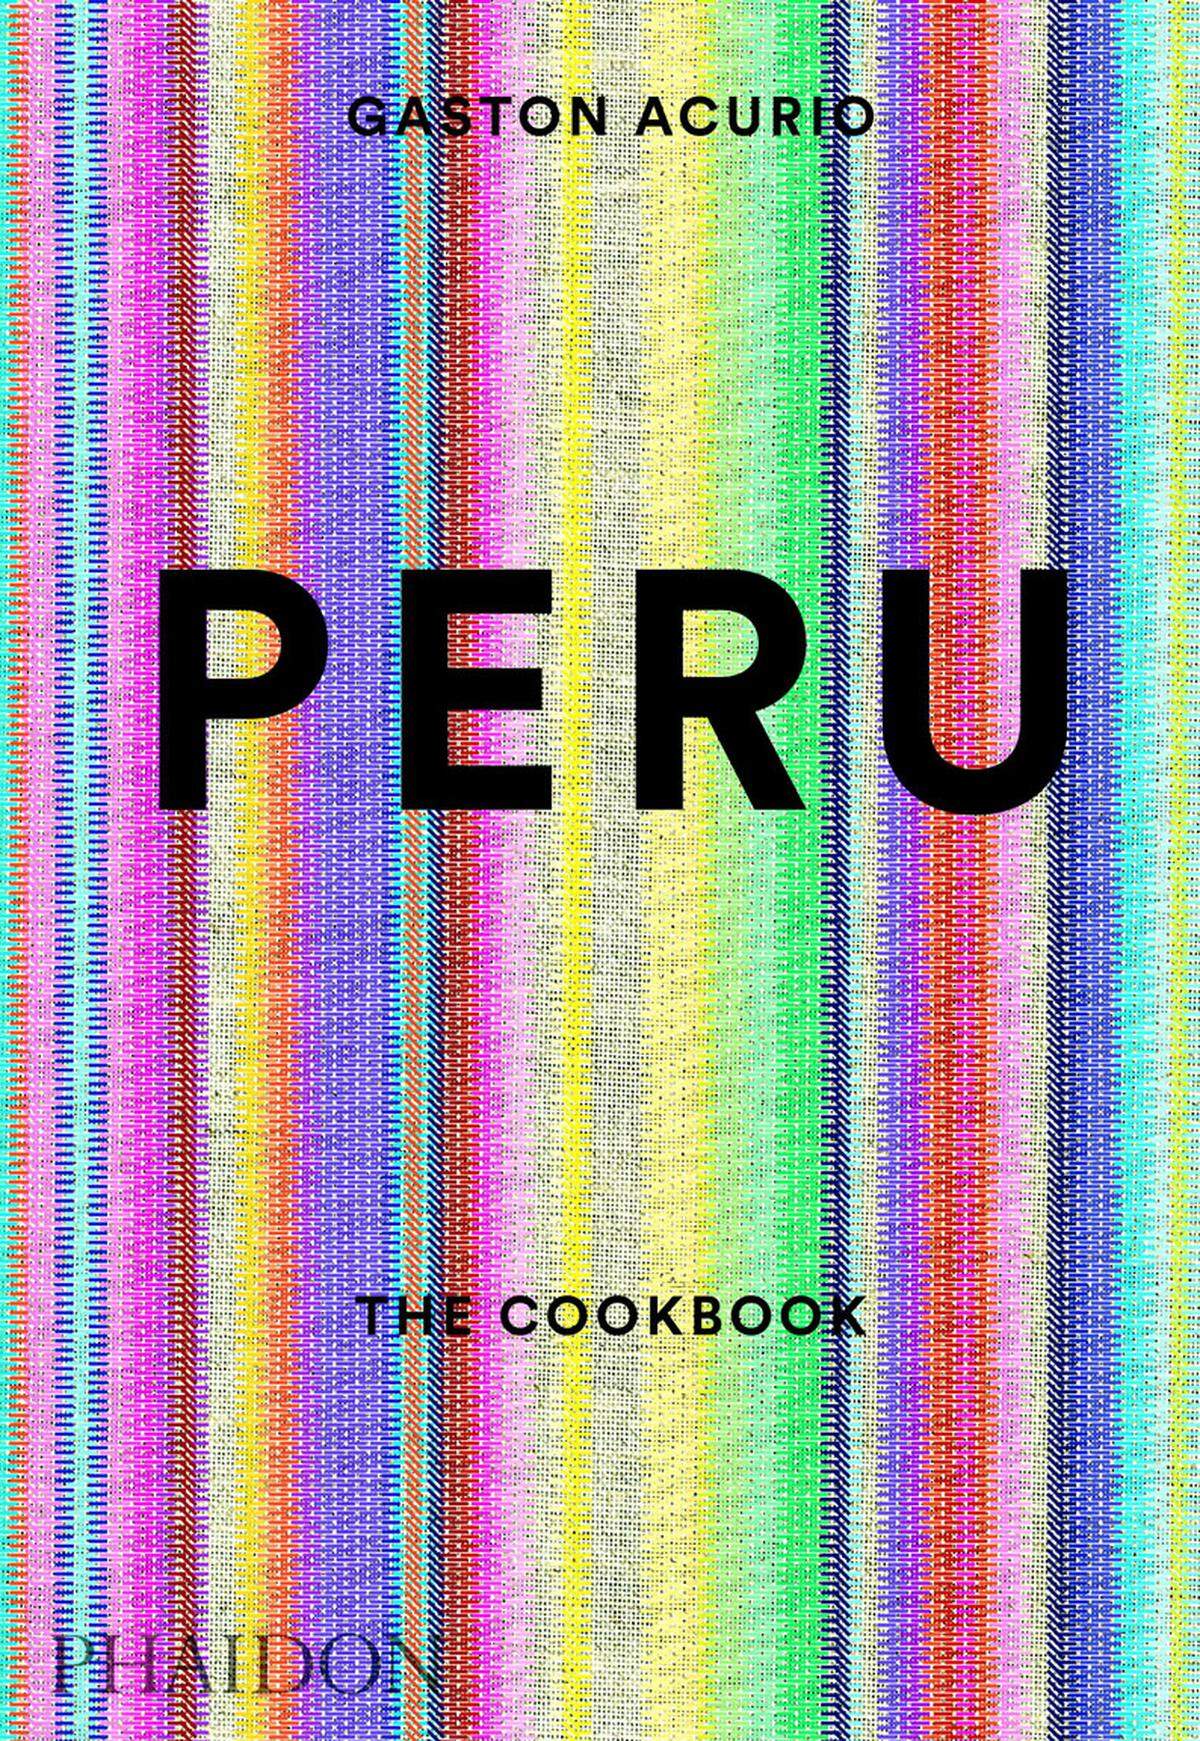 Die peruanische Küche war in den vergangenen Jahren als einer der großen internationalen Trends nicht zu übersehen. Vor allem Ceviche ist in aller Munde. Was das Land sonst noch bereithält, zeigt dieses umfassende Standardwerk, bisher nur auf Englisch erhältlich. "Peru. The Cookbook", Phaidon, 40 Euro